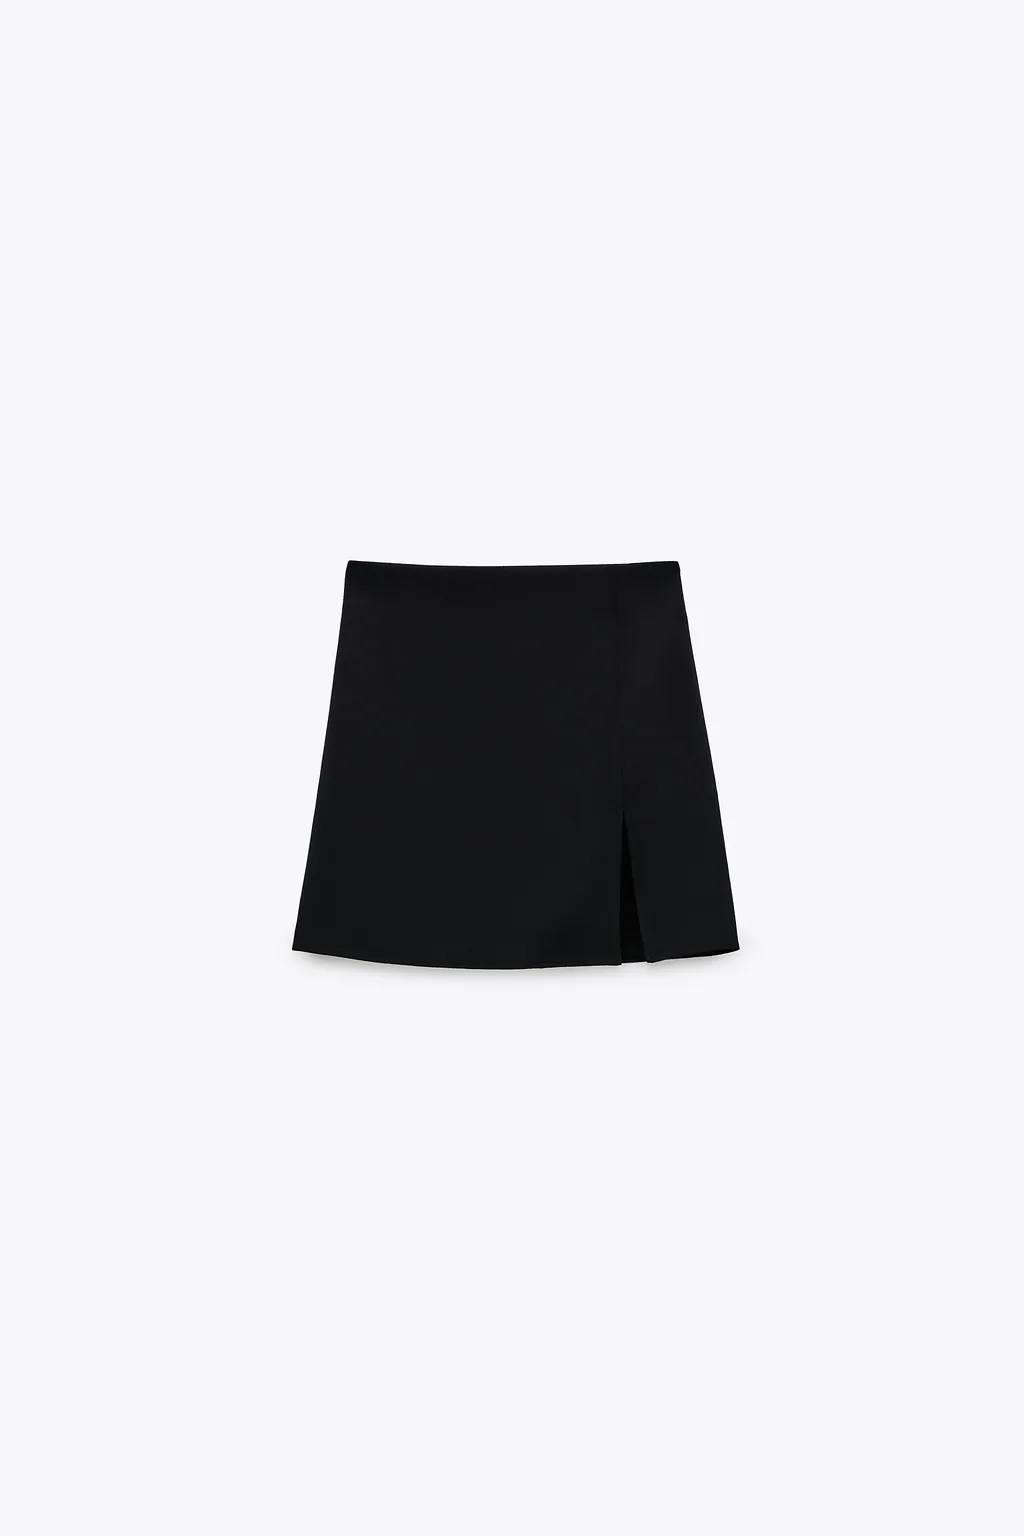 Minifalda con abertura, Zara